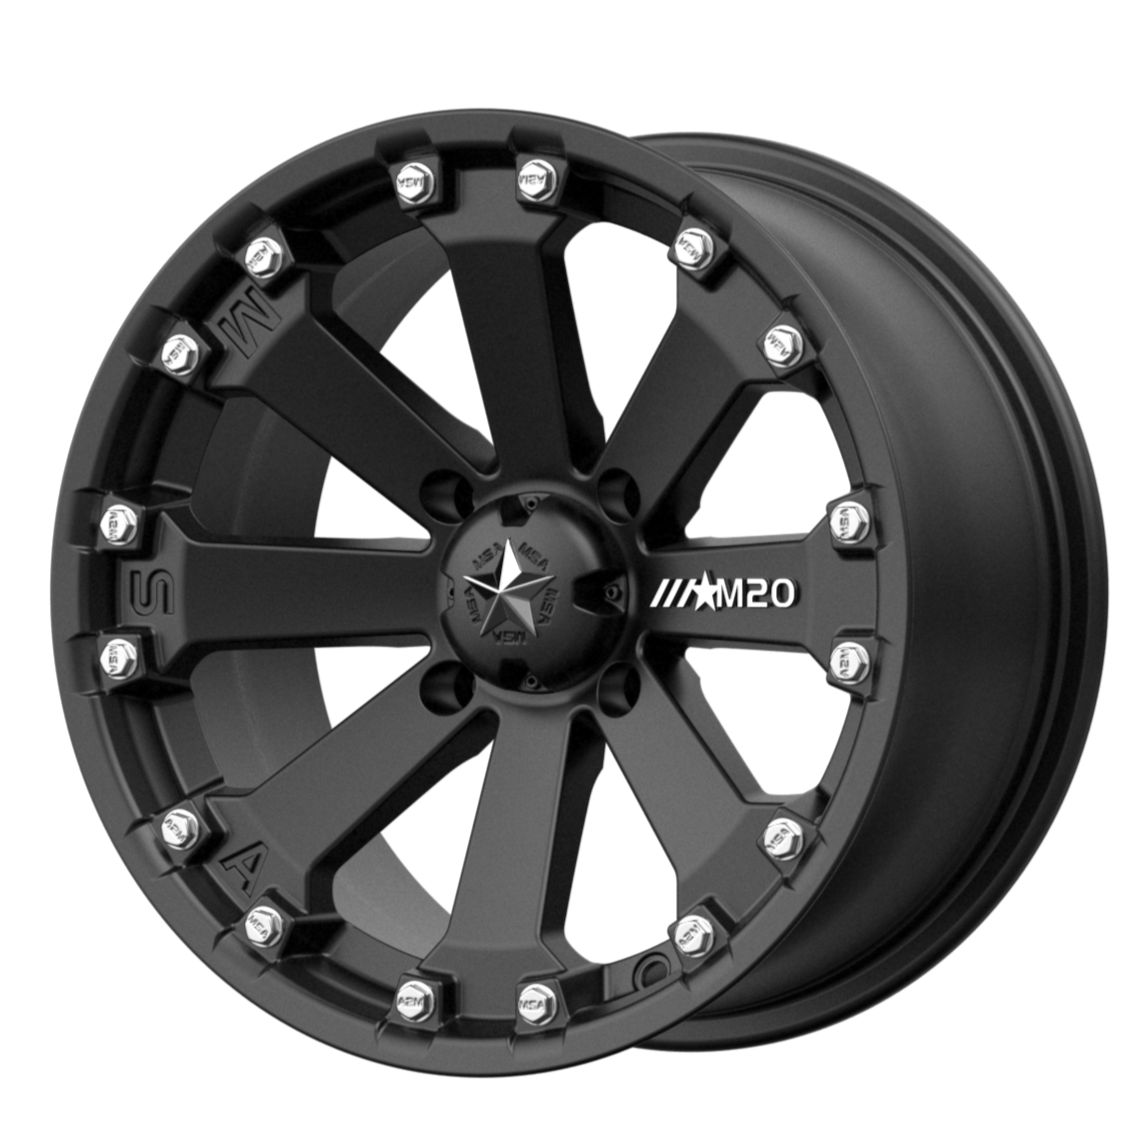 MSA Offroad Wheels M20 KORE 14x7 0 4x156/4x156 Satin Black